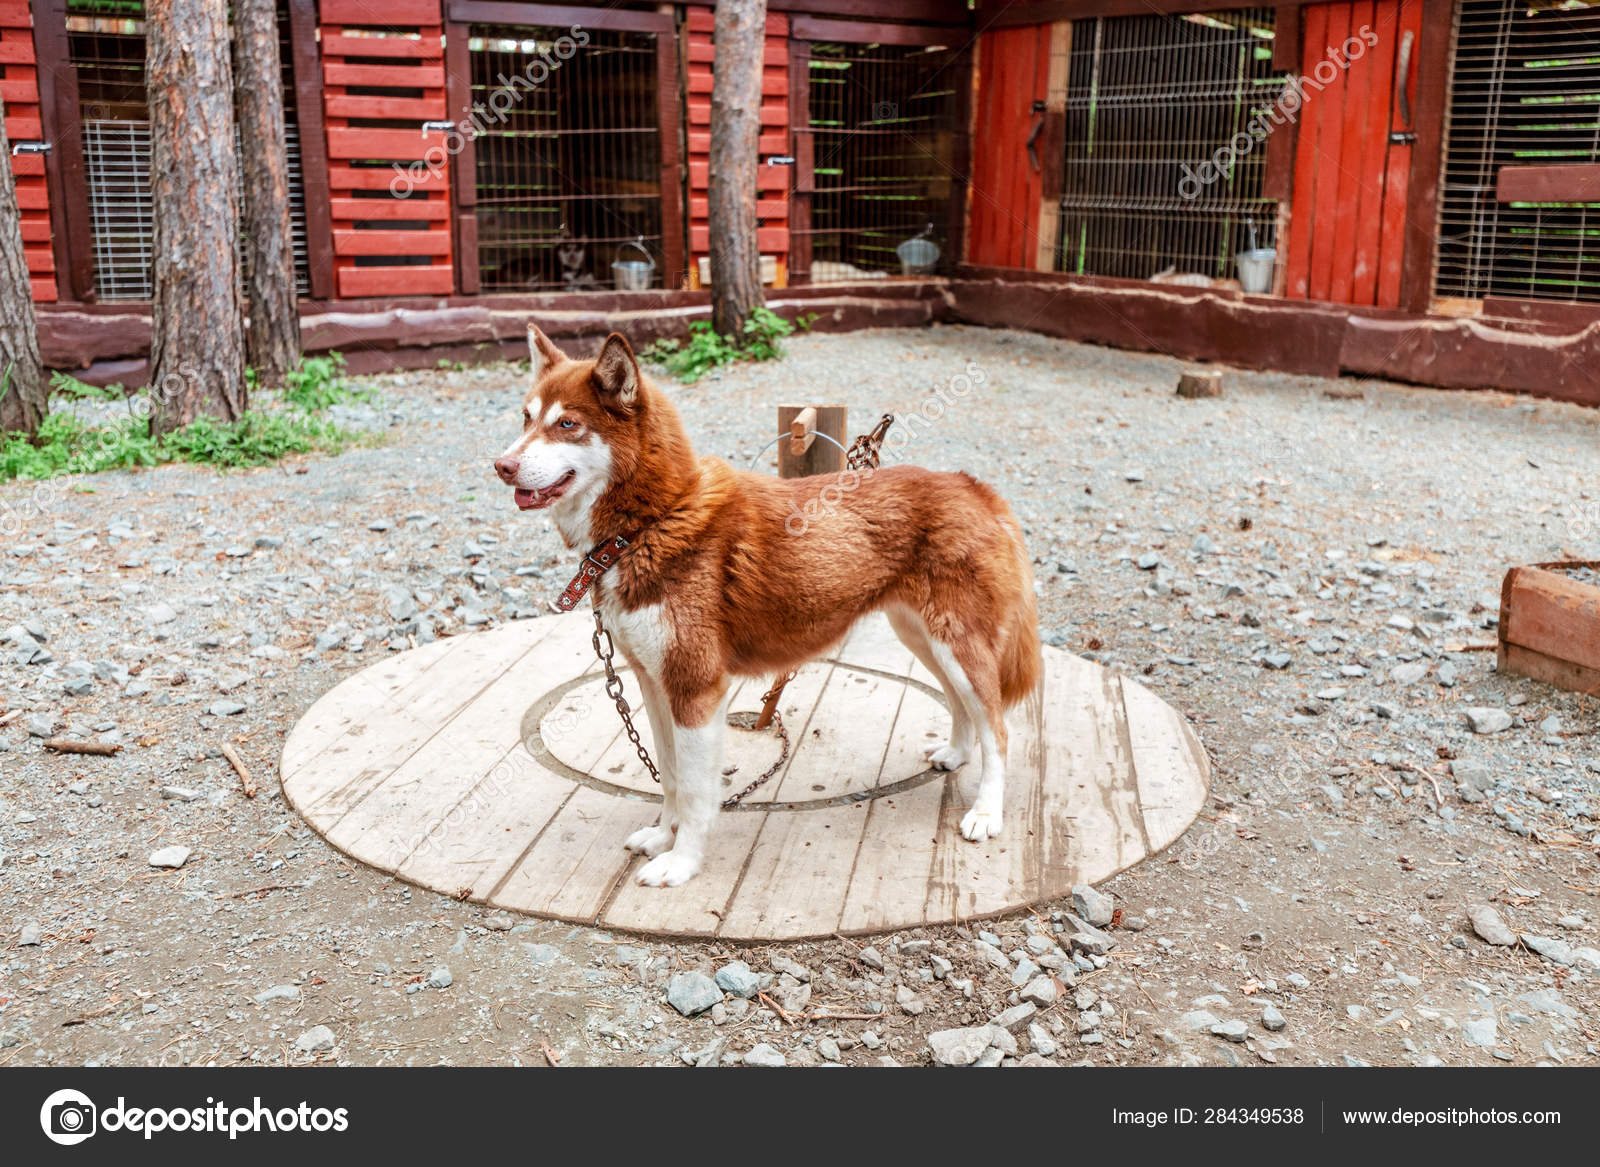 husky dog shelter